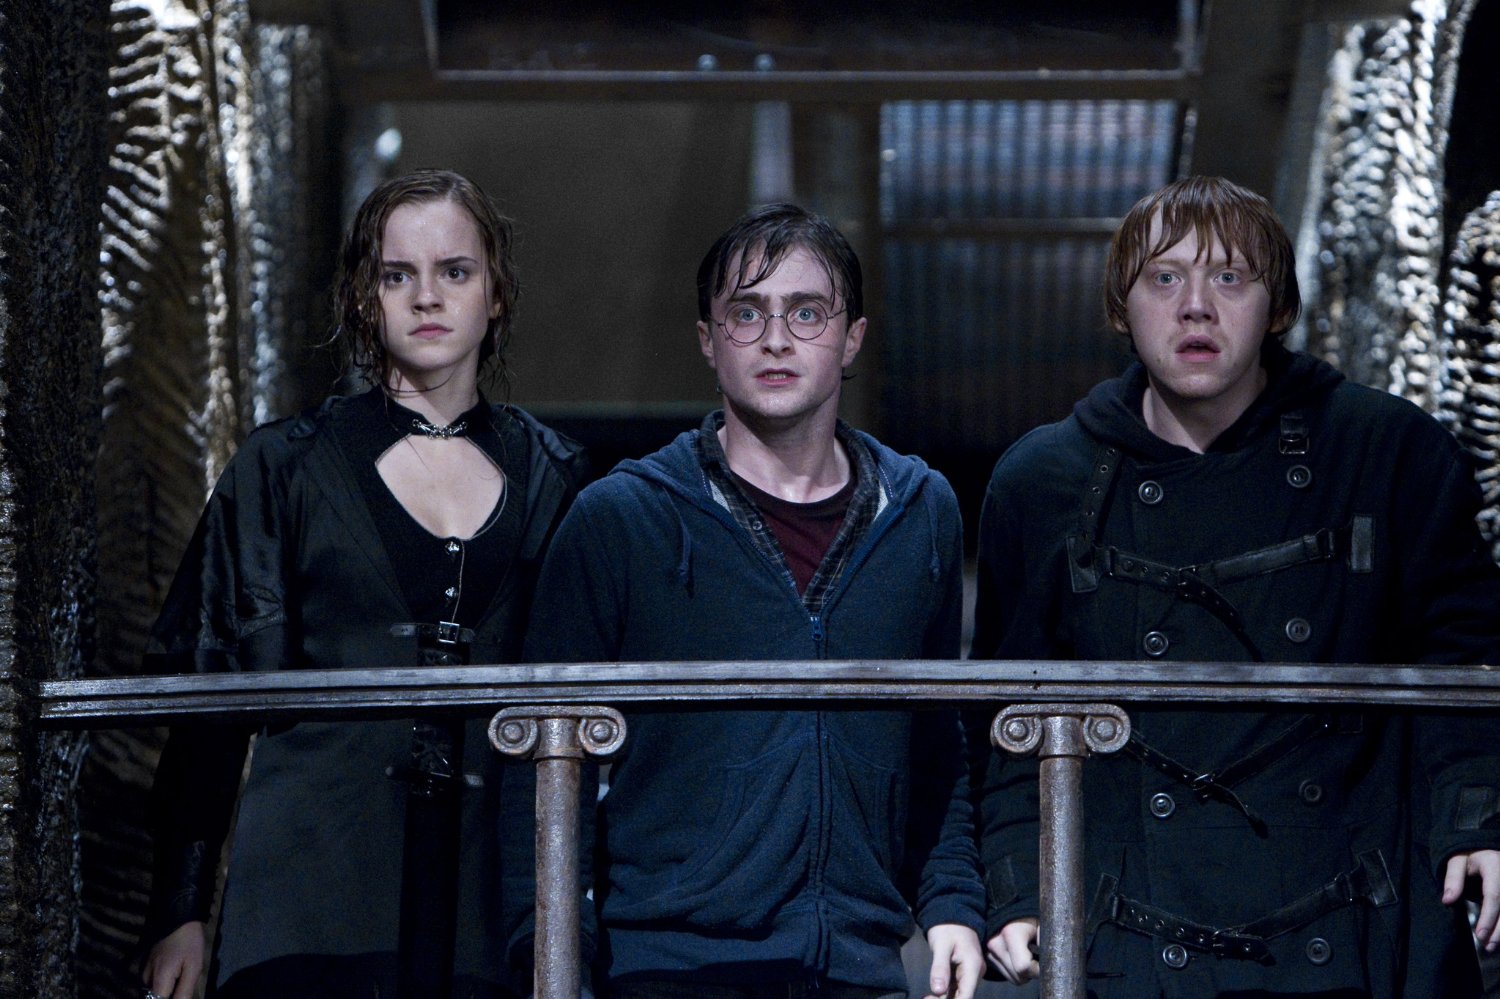 فيلم Harry Potter and the Deathly Hallows